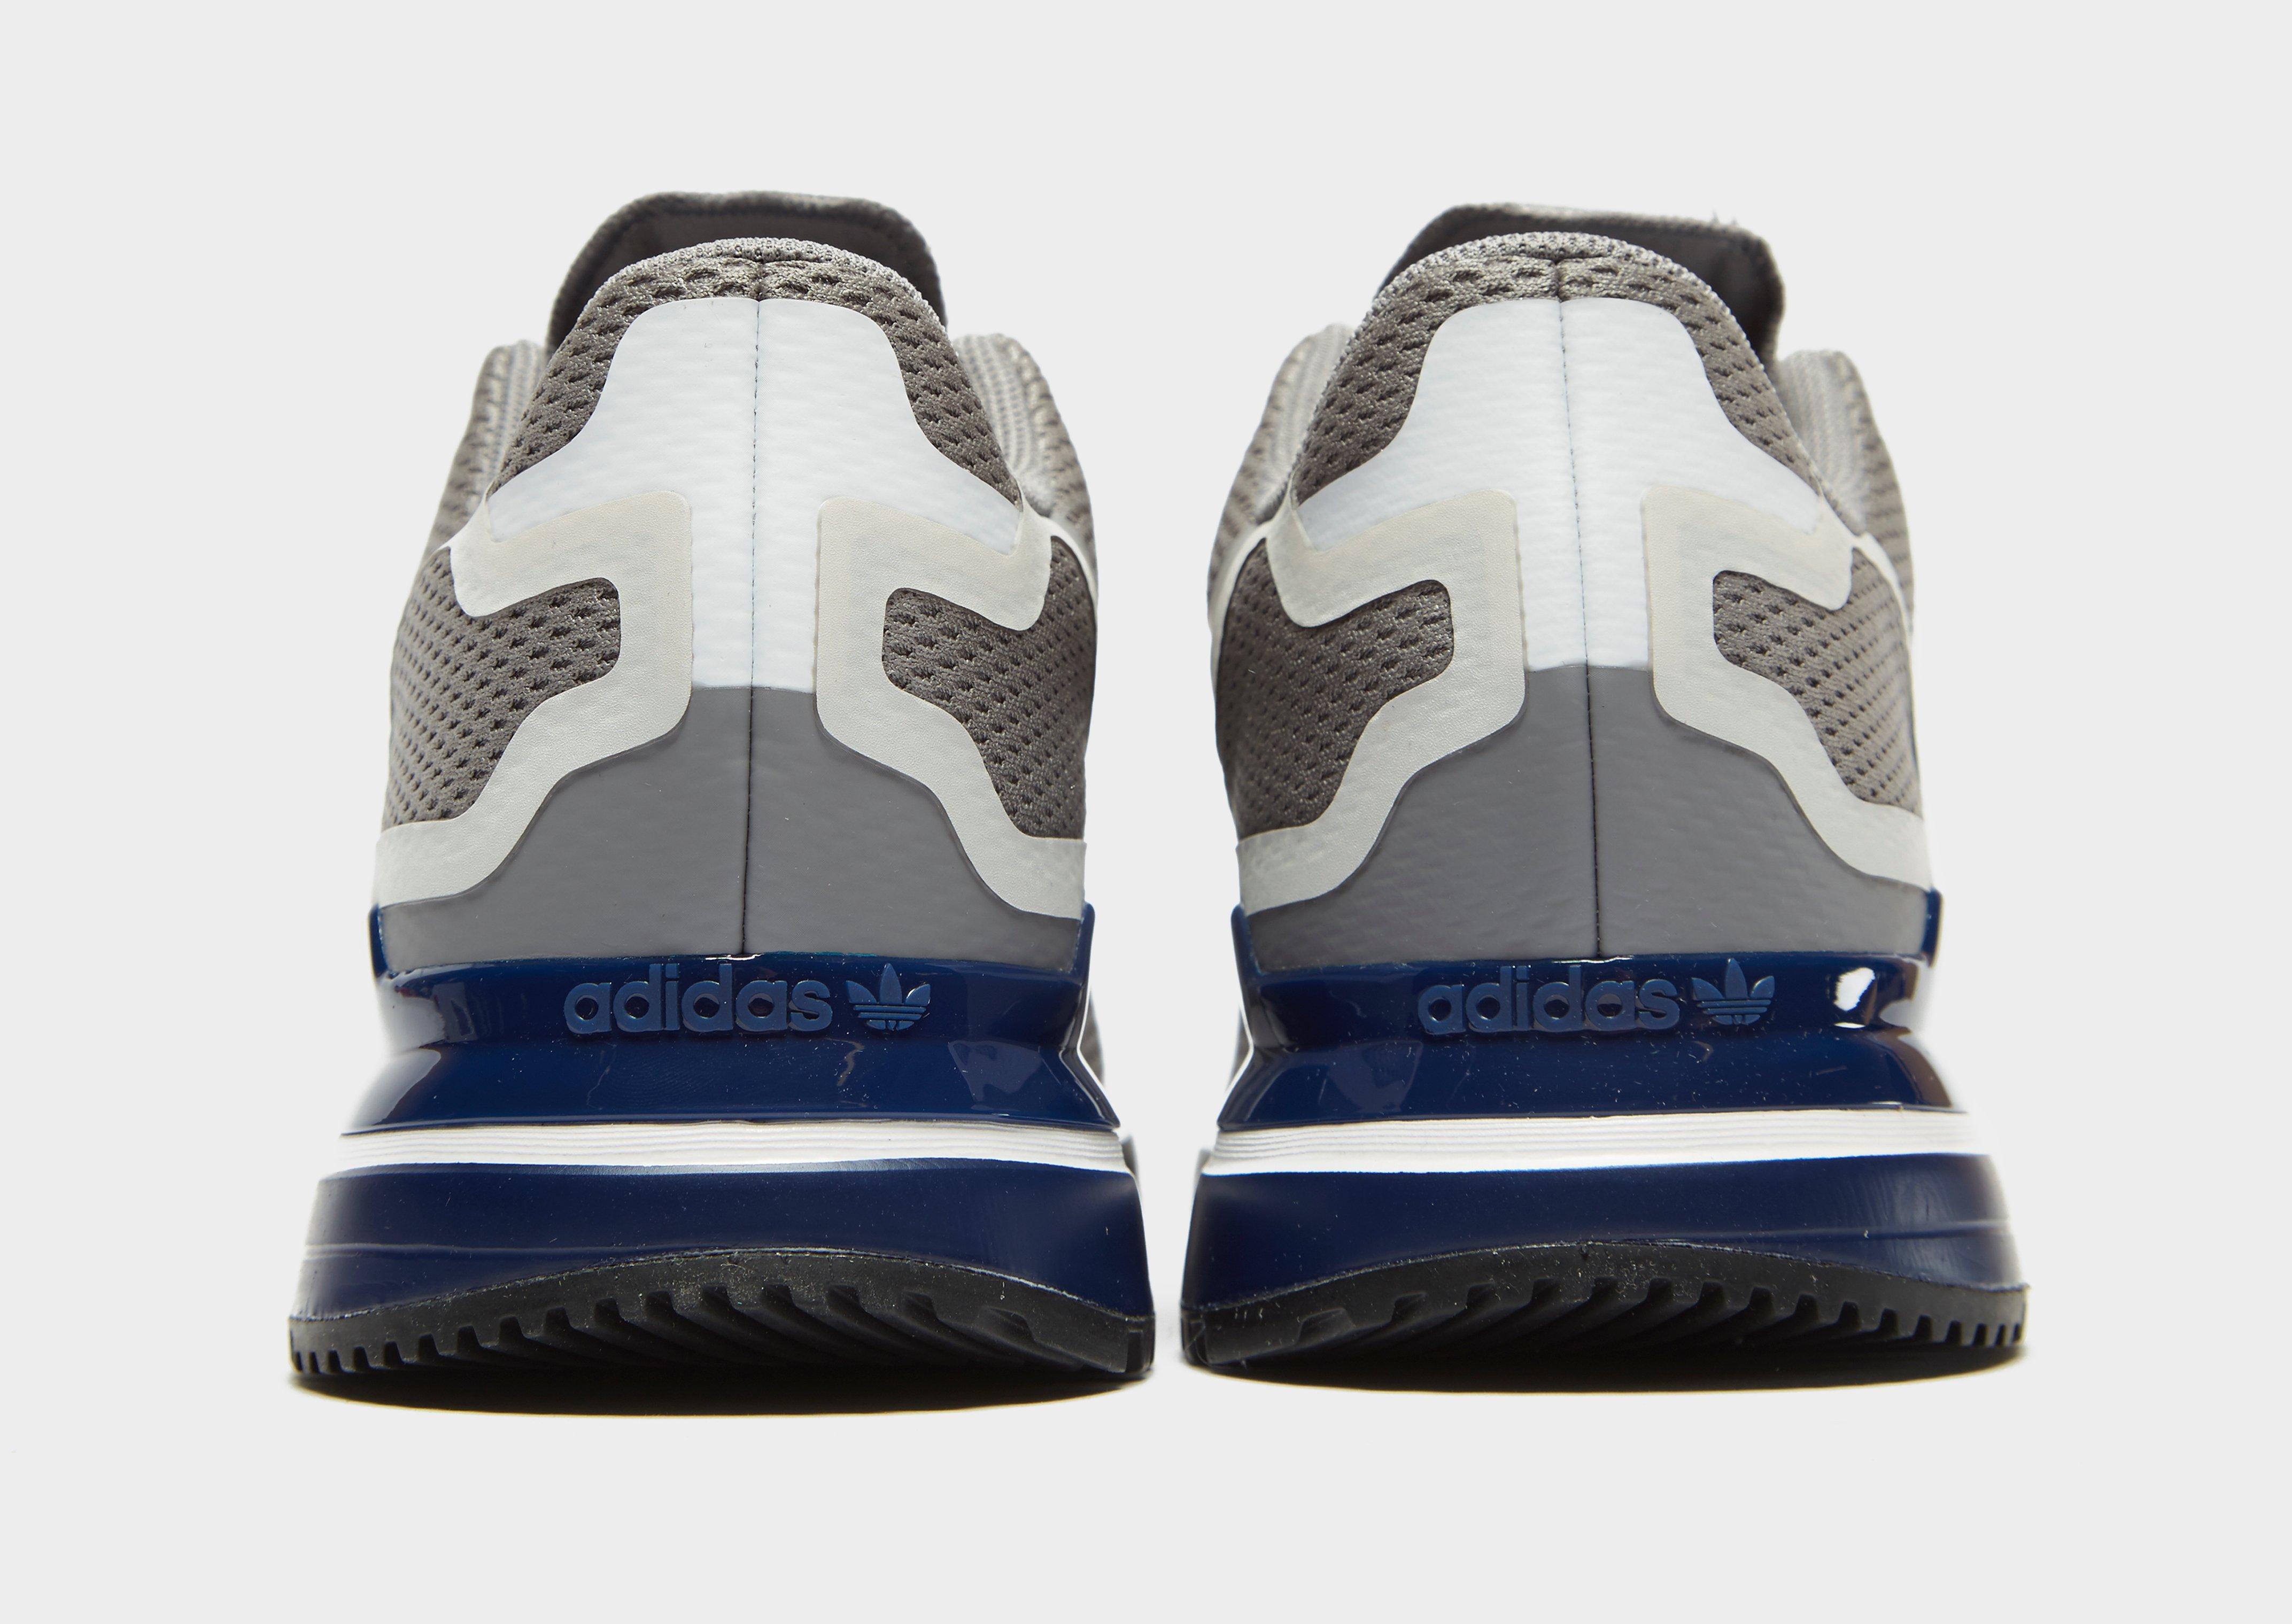 adidas zx 750 grey blue